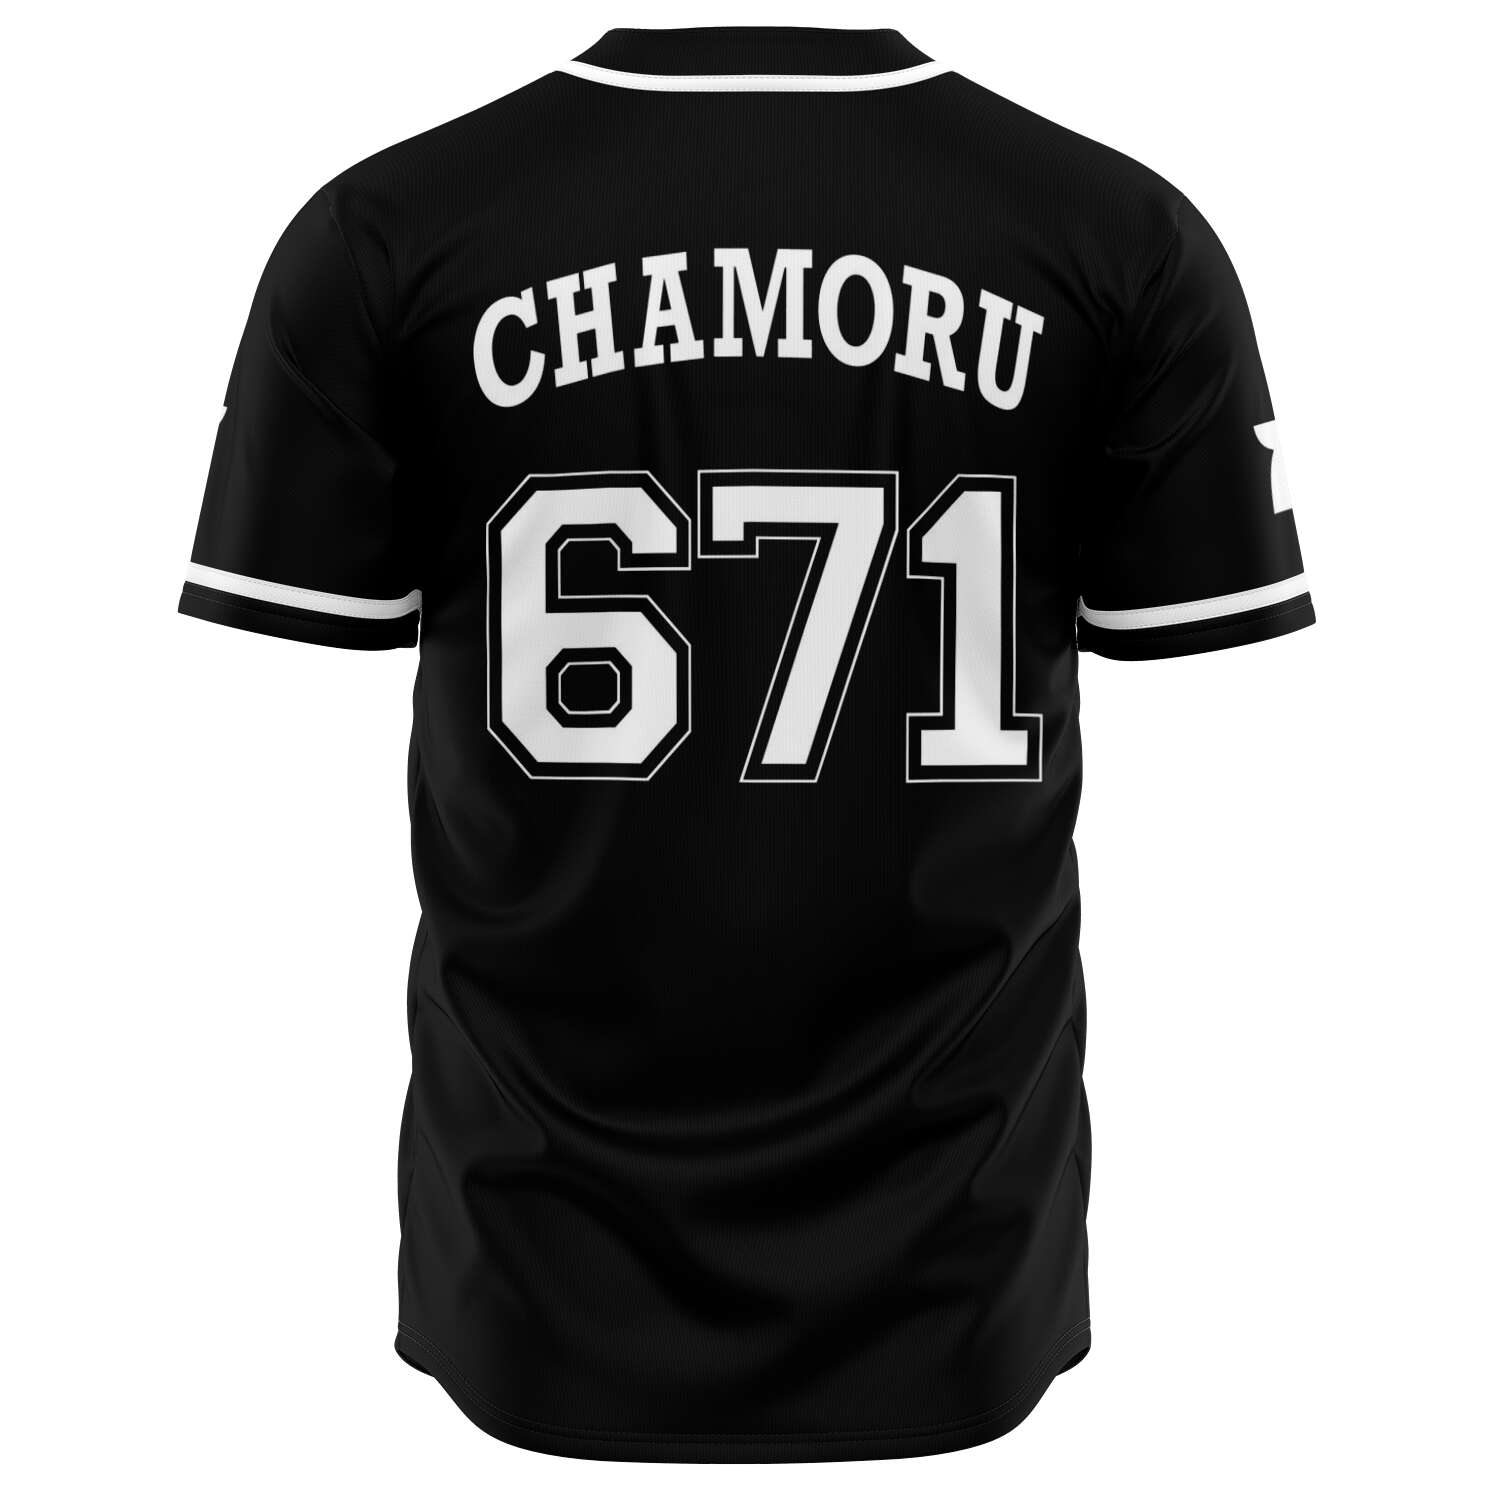 Guam Seal Chamoru Baseball Jersey